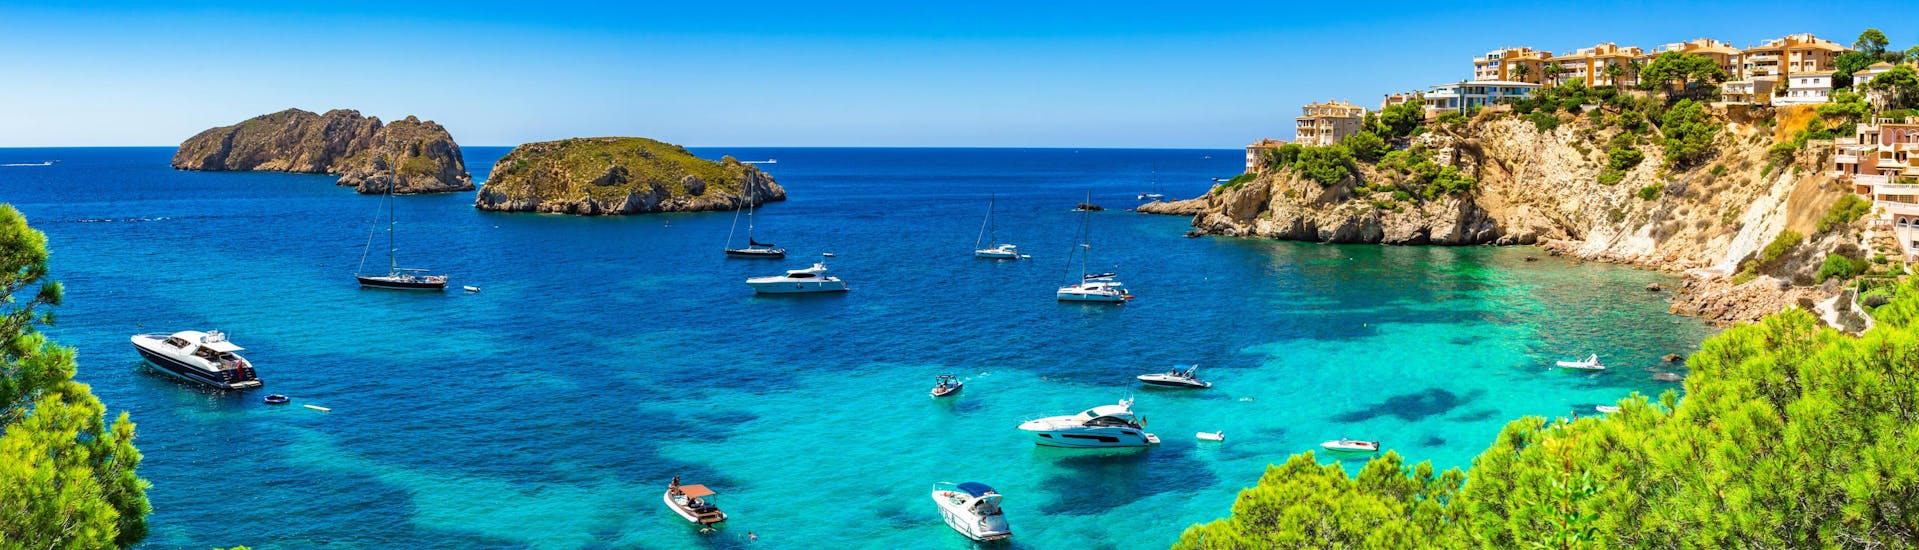 Blick auf die Küste von Santa Ponsa und die Malgrats-Inseln, die Sie bei einer Bootstour entdecken können.